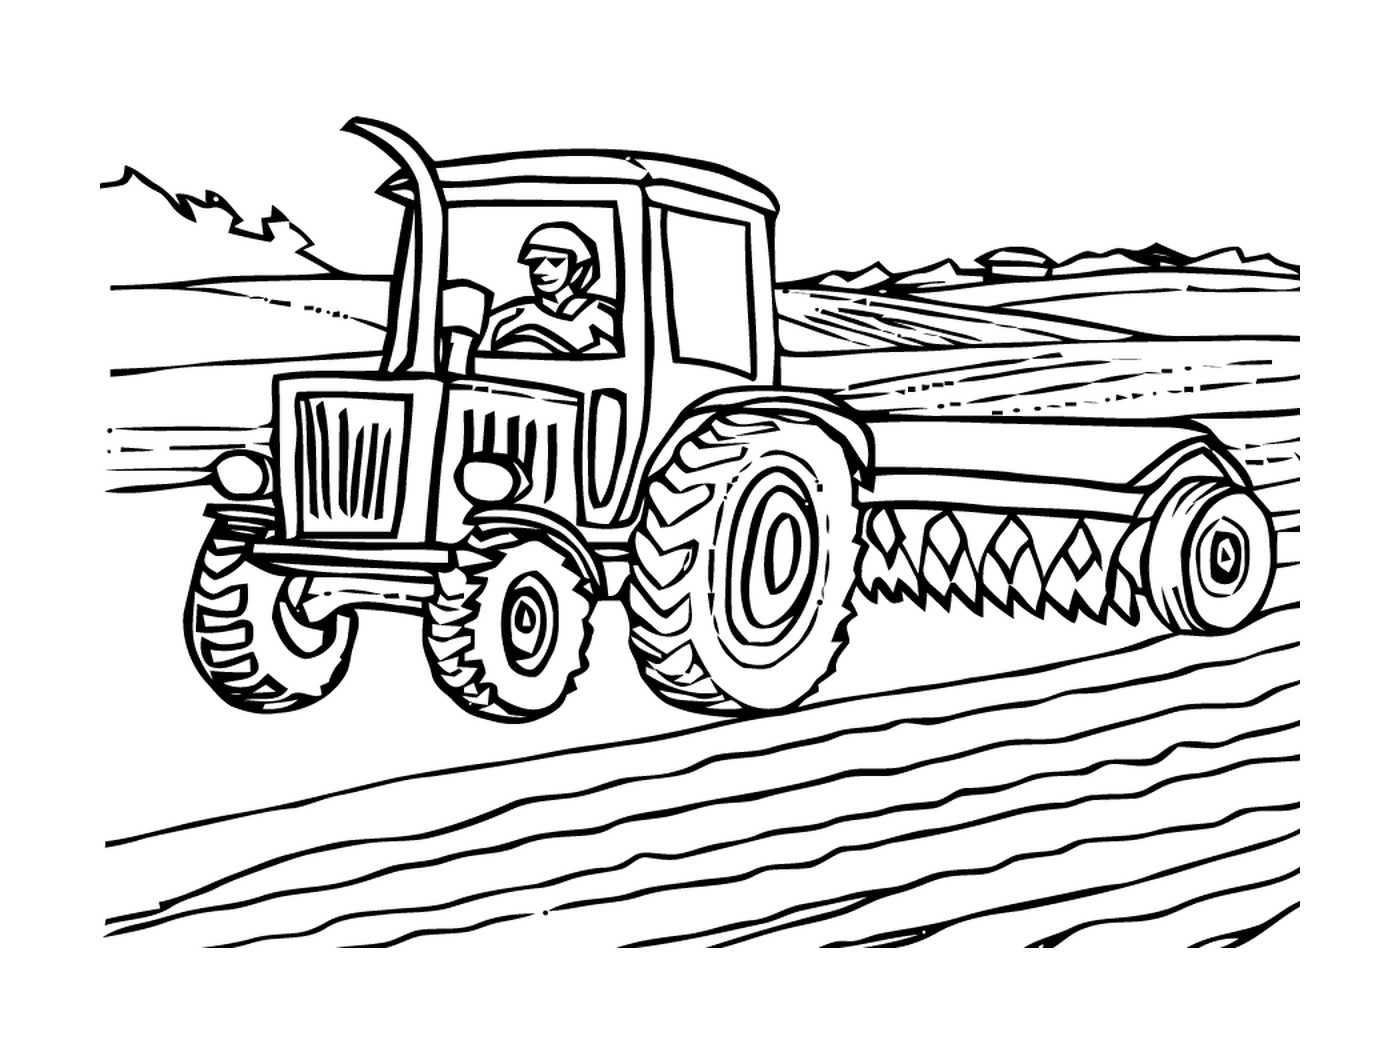  Granjero llevó la acción del tractor 